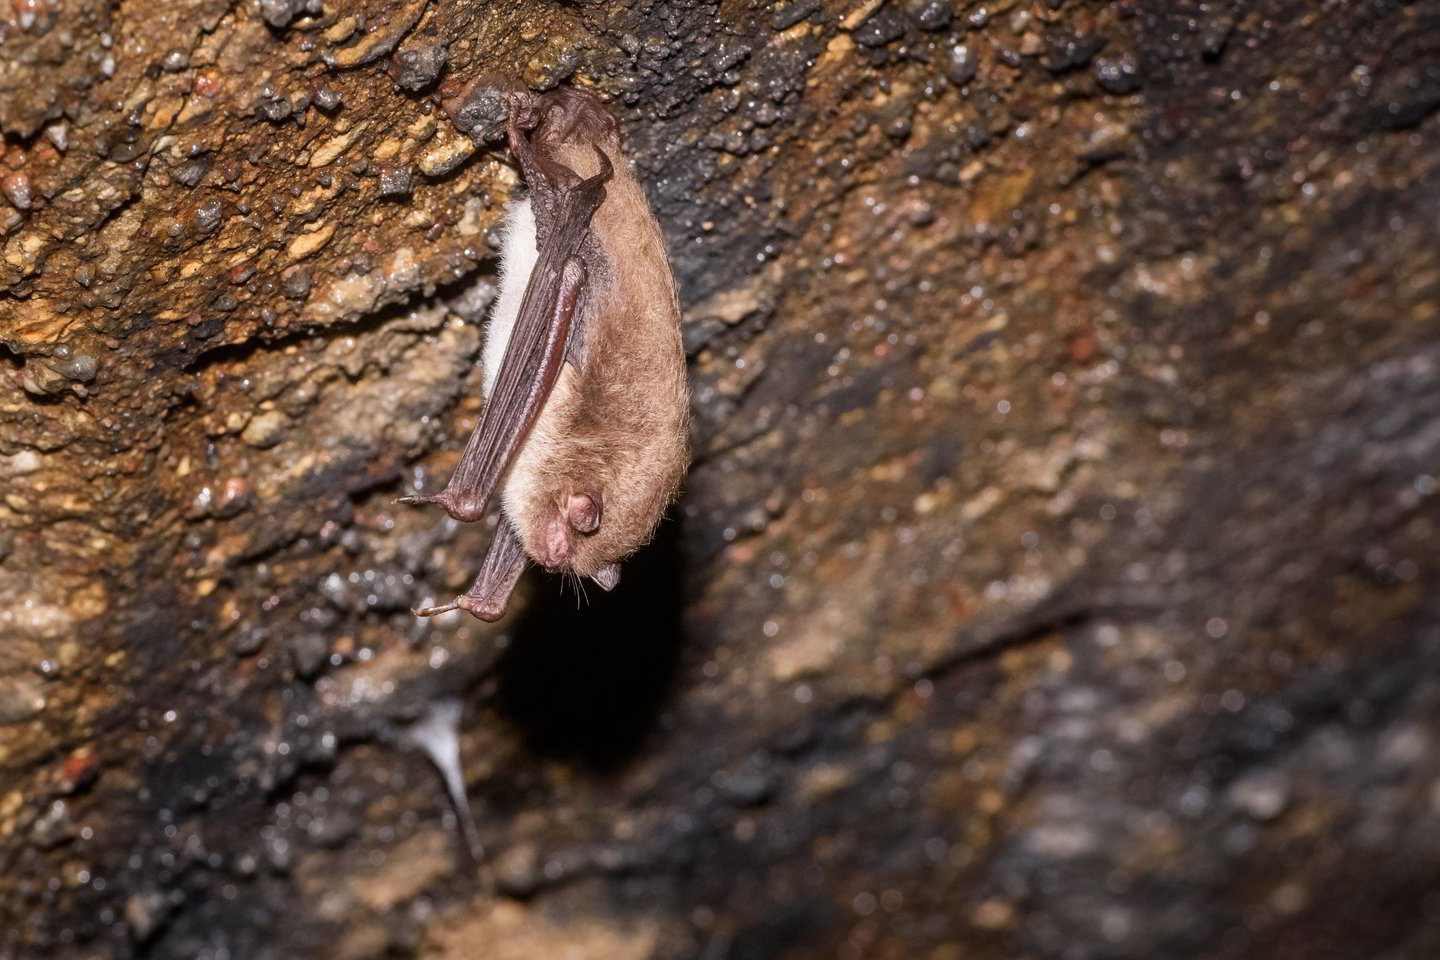  Šikšnosparnių budinimas žiemą – itin žalingas. Šie gyvūnai jaučia triukšmą, yra jautrūs šviesai ir temperatūrų svyravimams.<br>D. Umbraso nuotr.